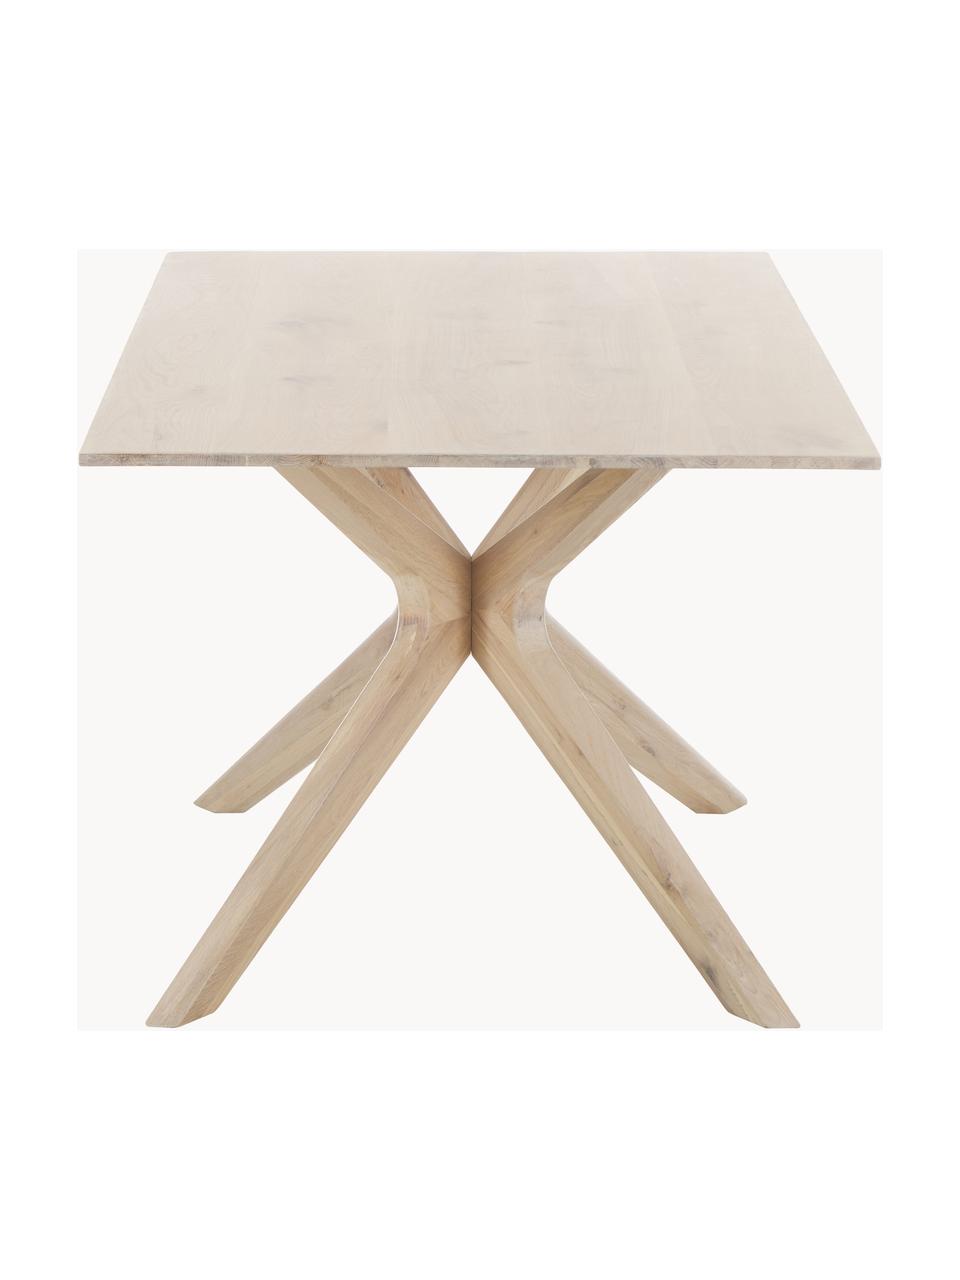 Jedálenský stôl z dubového dreva Armande, 180 x 90 cm, Dubové drevo, voskované, biela lakovaná, Dubové drevo, Š 180 x H 90 cm